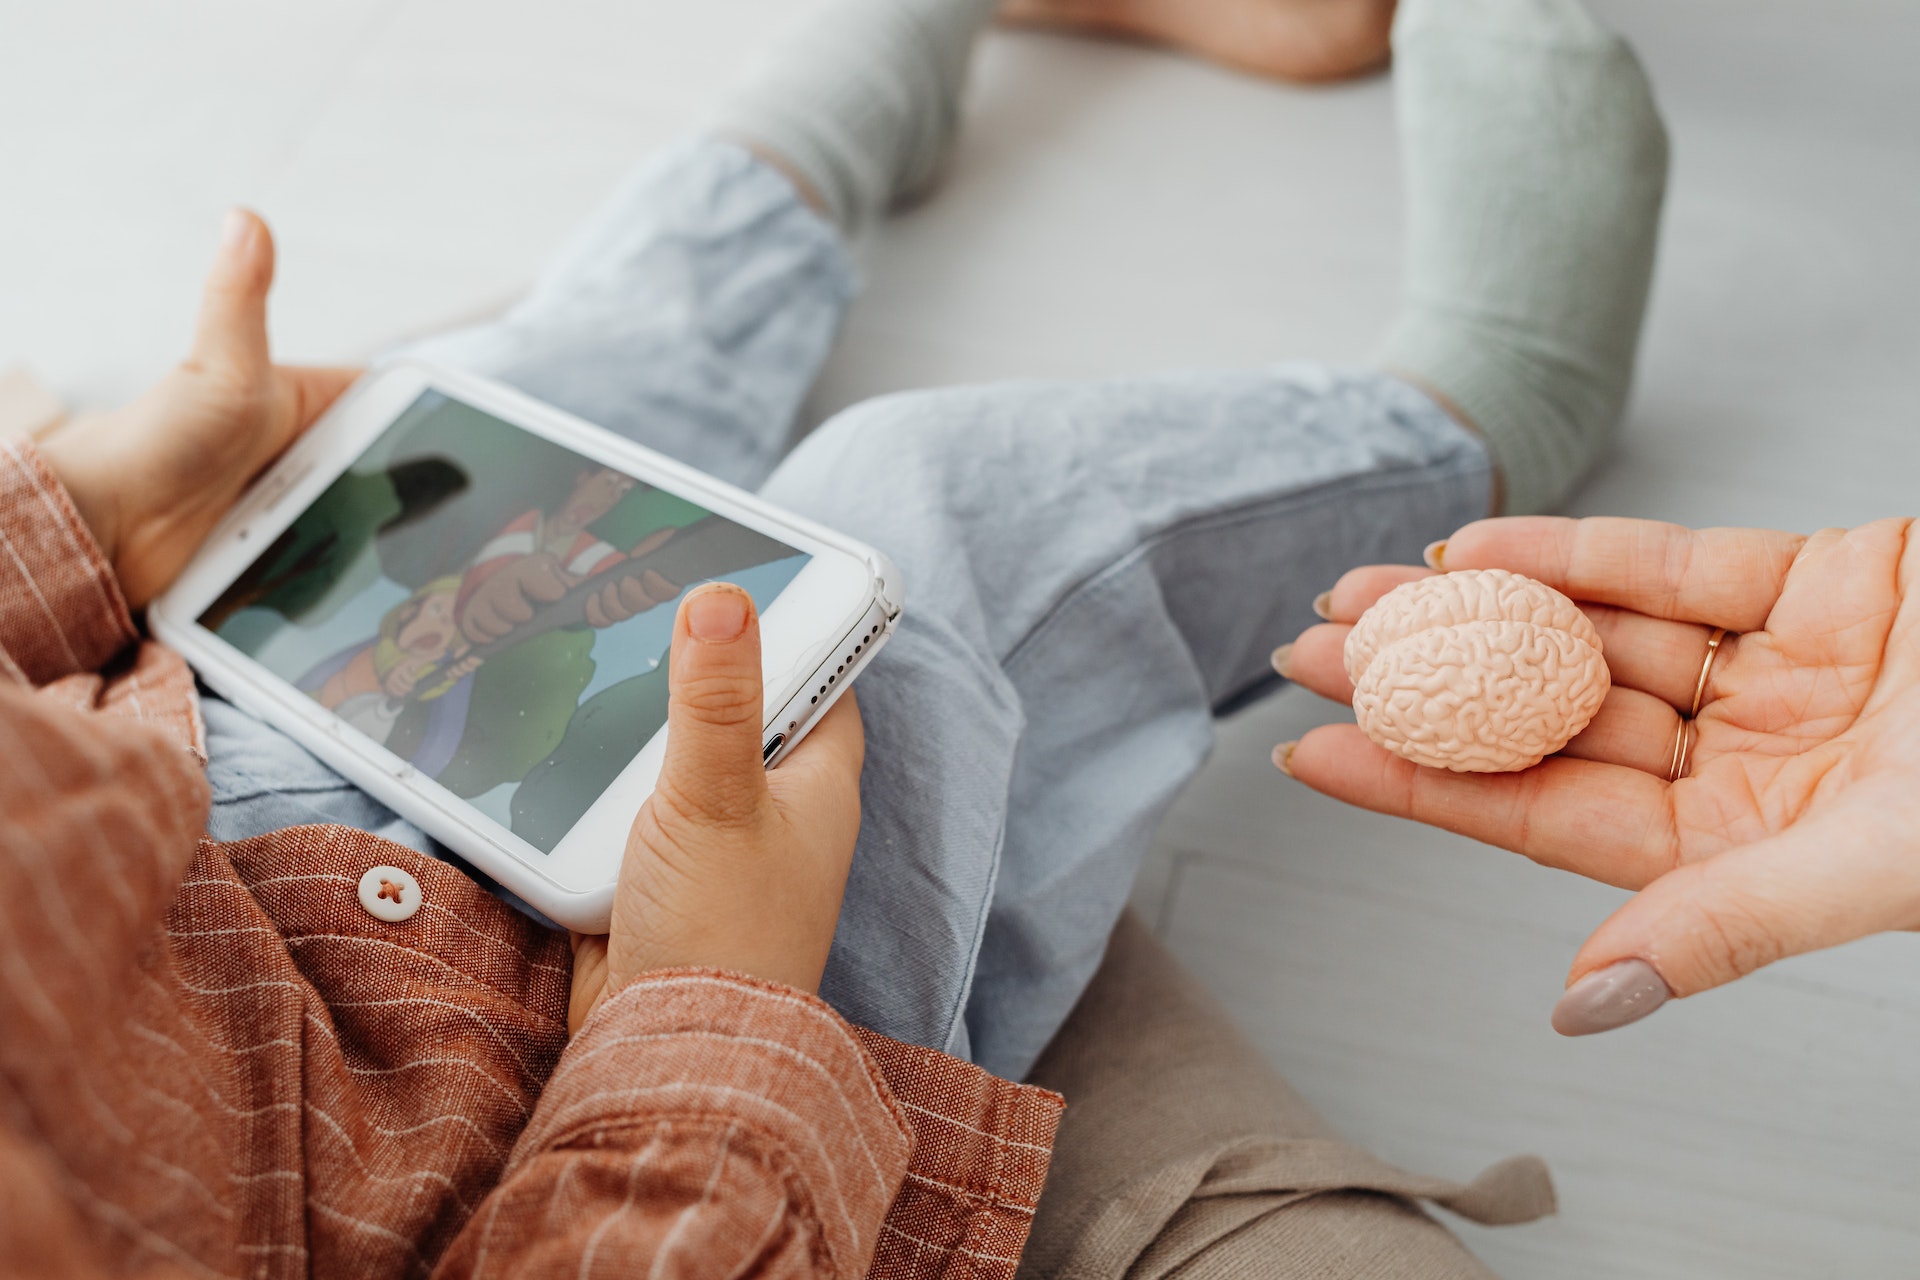 Kilkuletnie dziecko trzyma w rękach smartfon, rodzic wyciąga do niego otwartą dłoń na której leży przedmiot przypominający ludzki mózg.